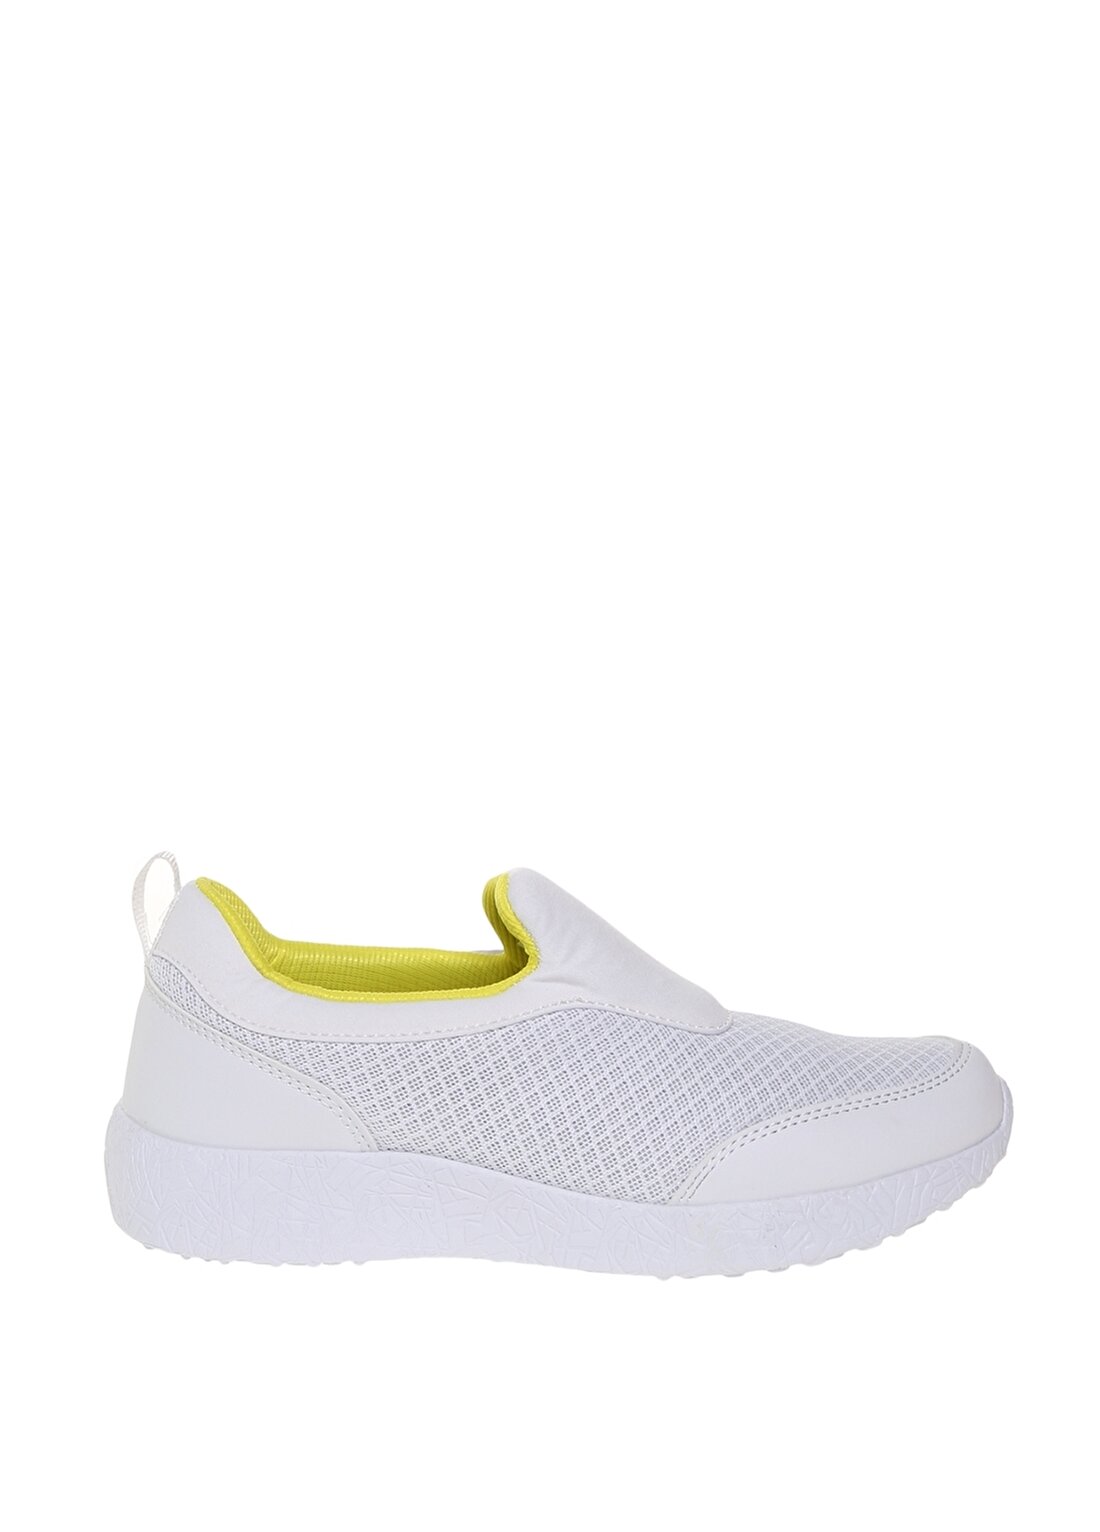 Limon Kadın Beyaz Düz Ayakkabı